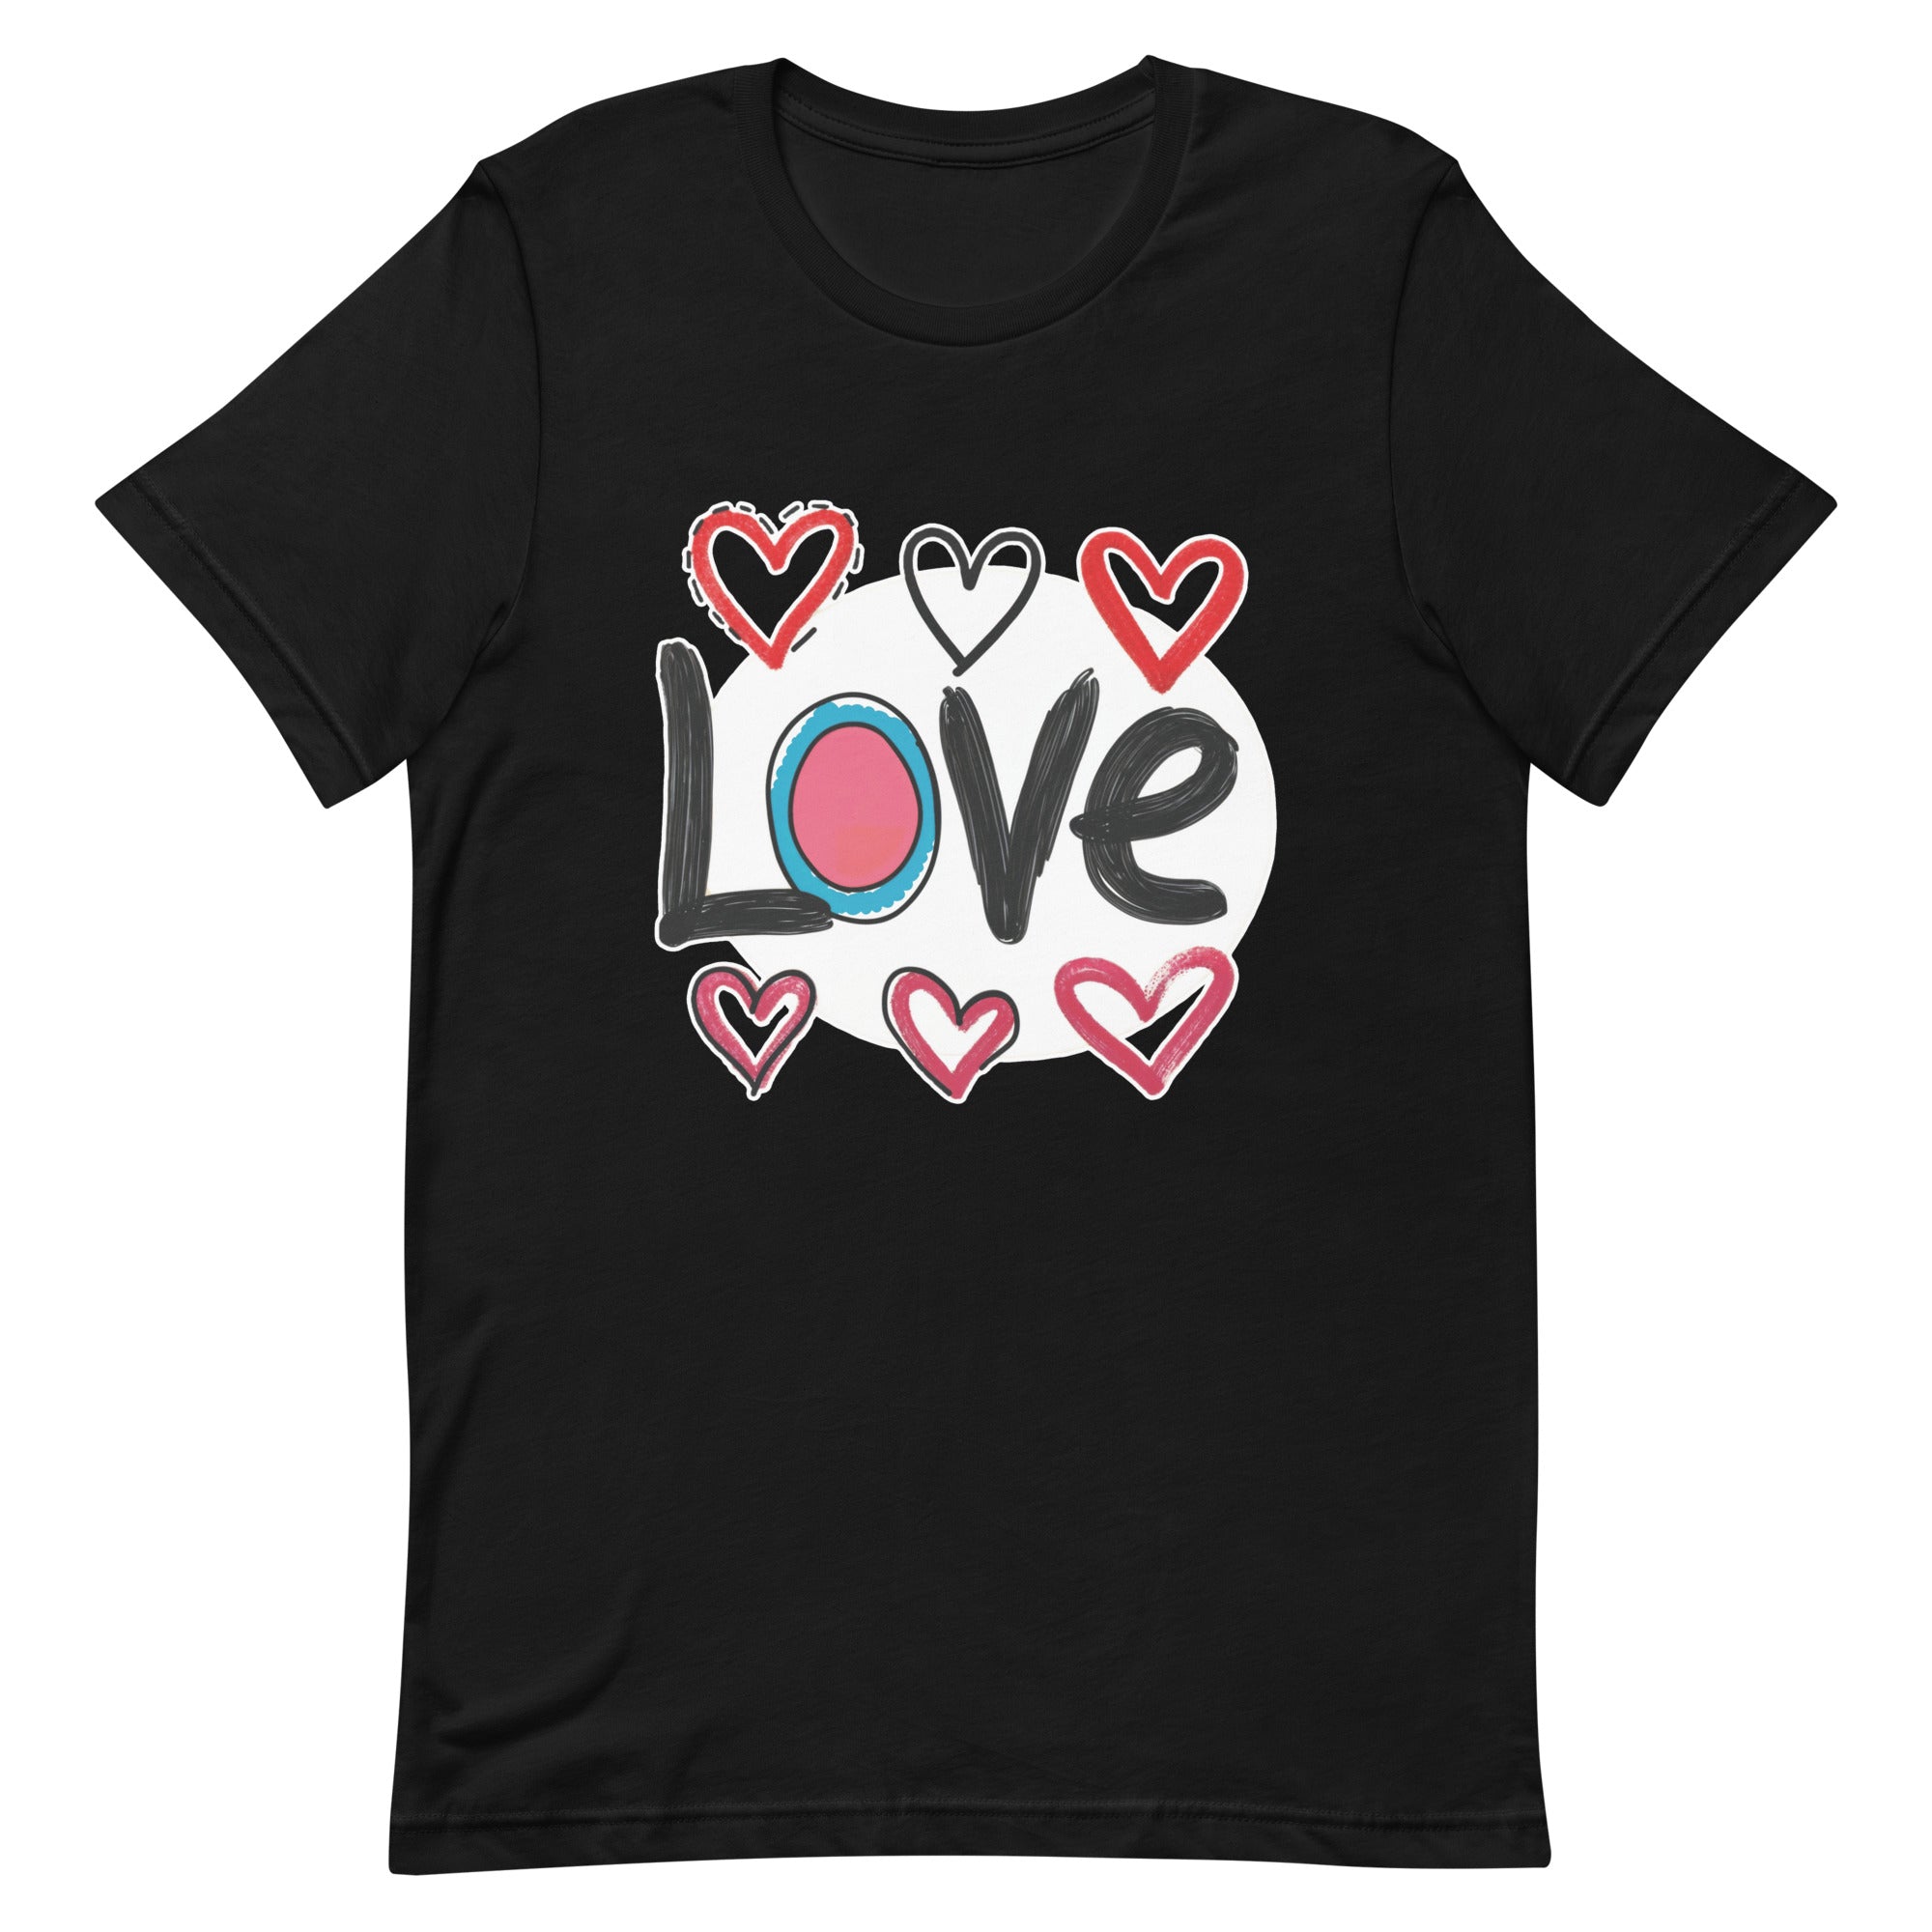 Pop-Art "Love." T-Shirt, Gift For Pop-Art Lovers Black S L XL M DenBox